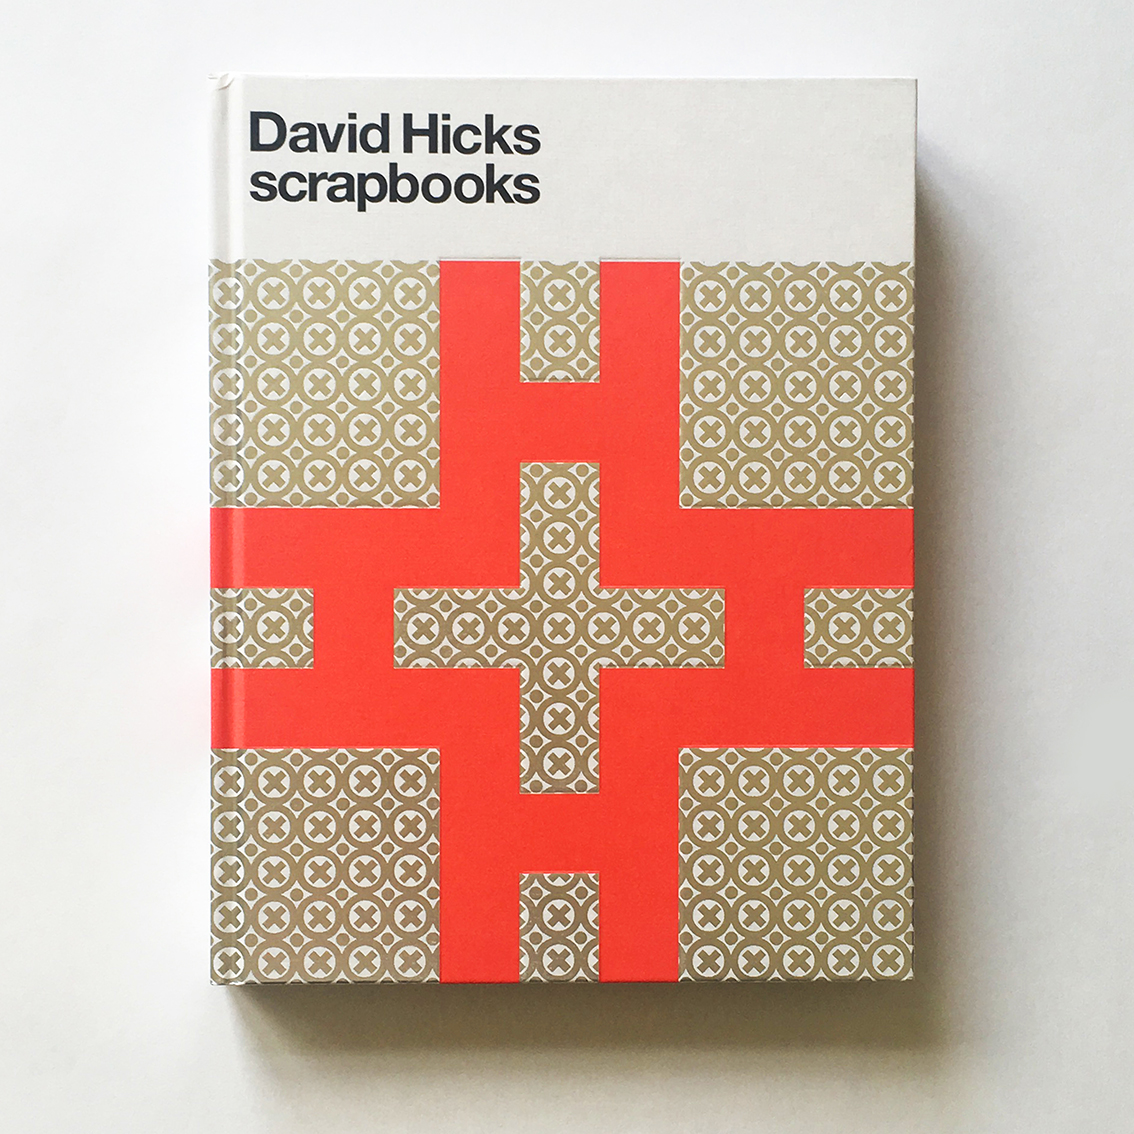 David_Hicks_Scrapbooks_1.jpg